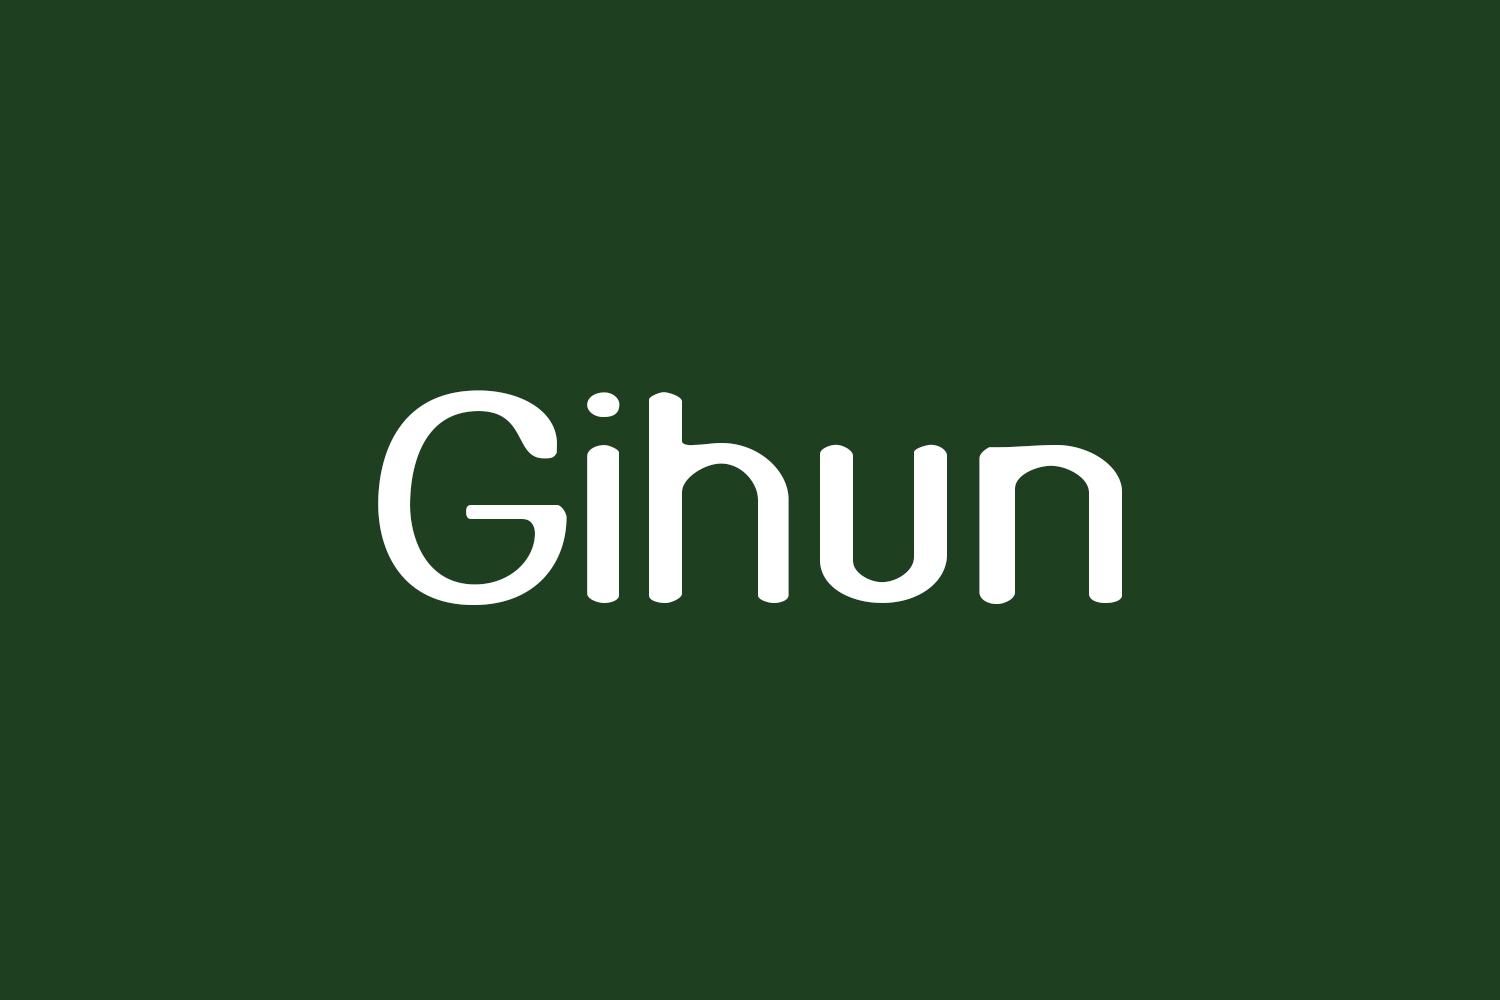 Gihun Free Font